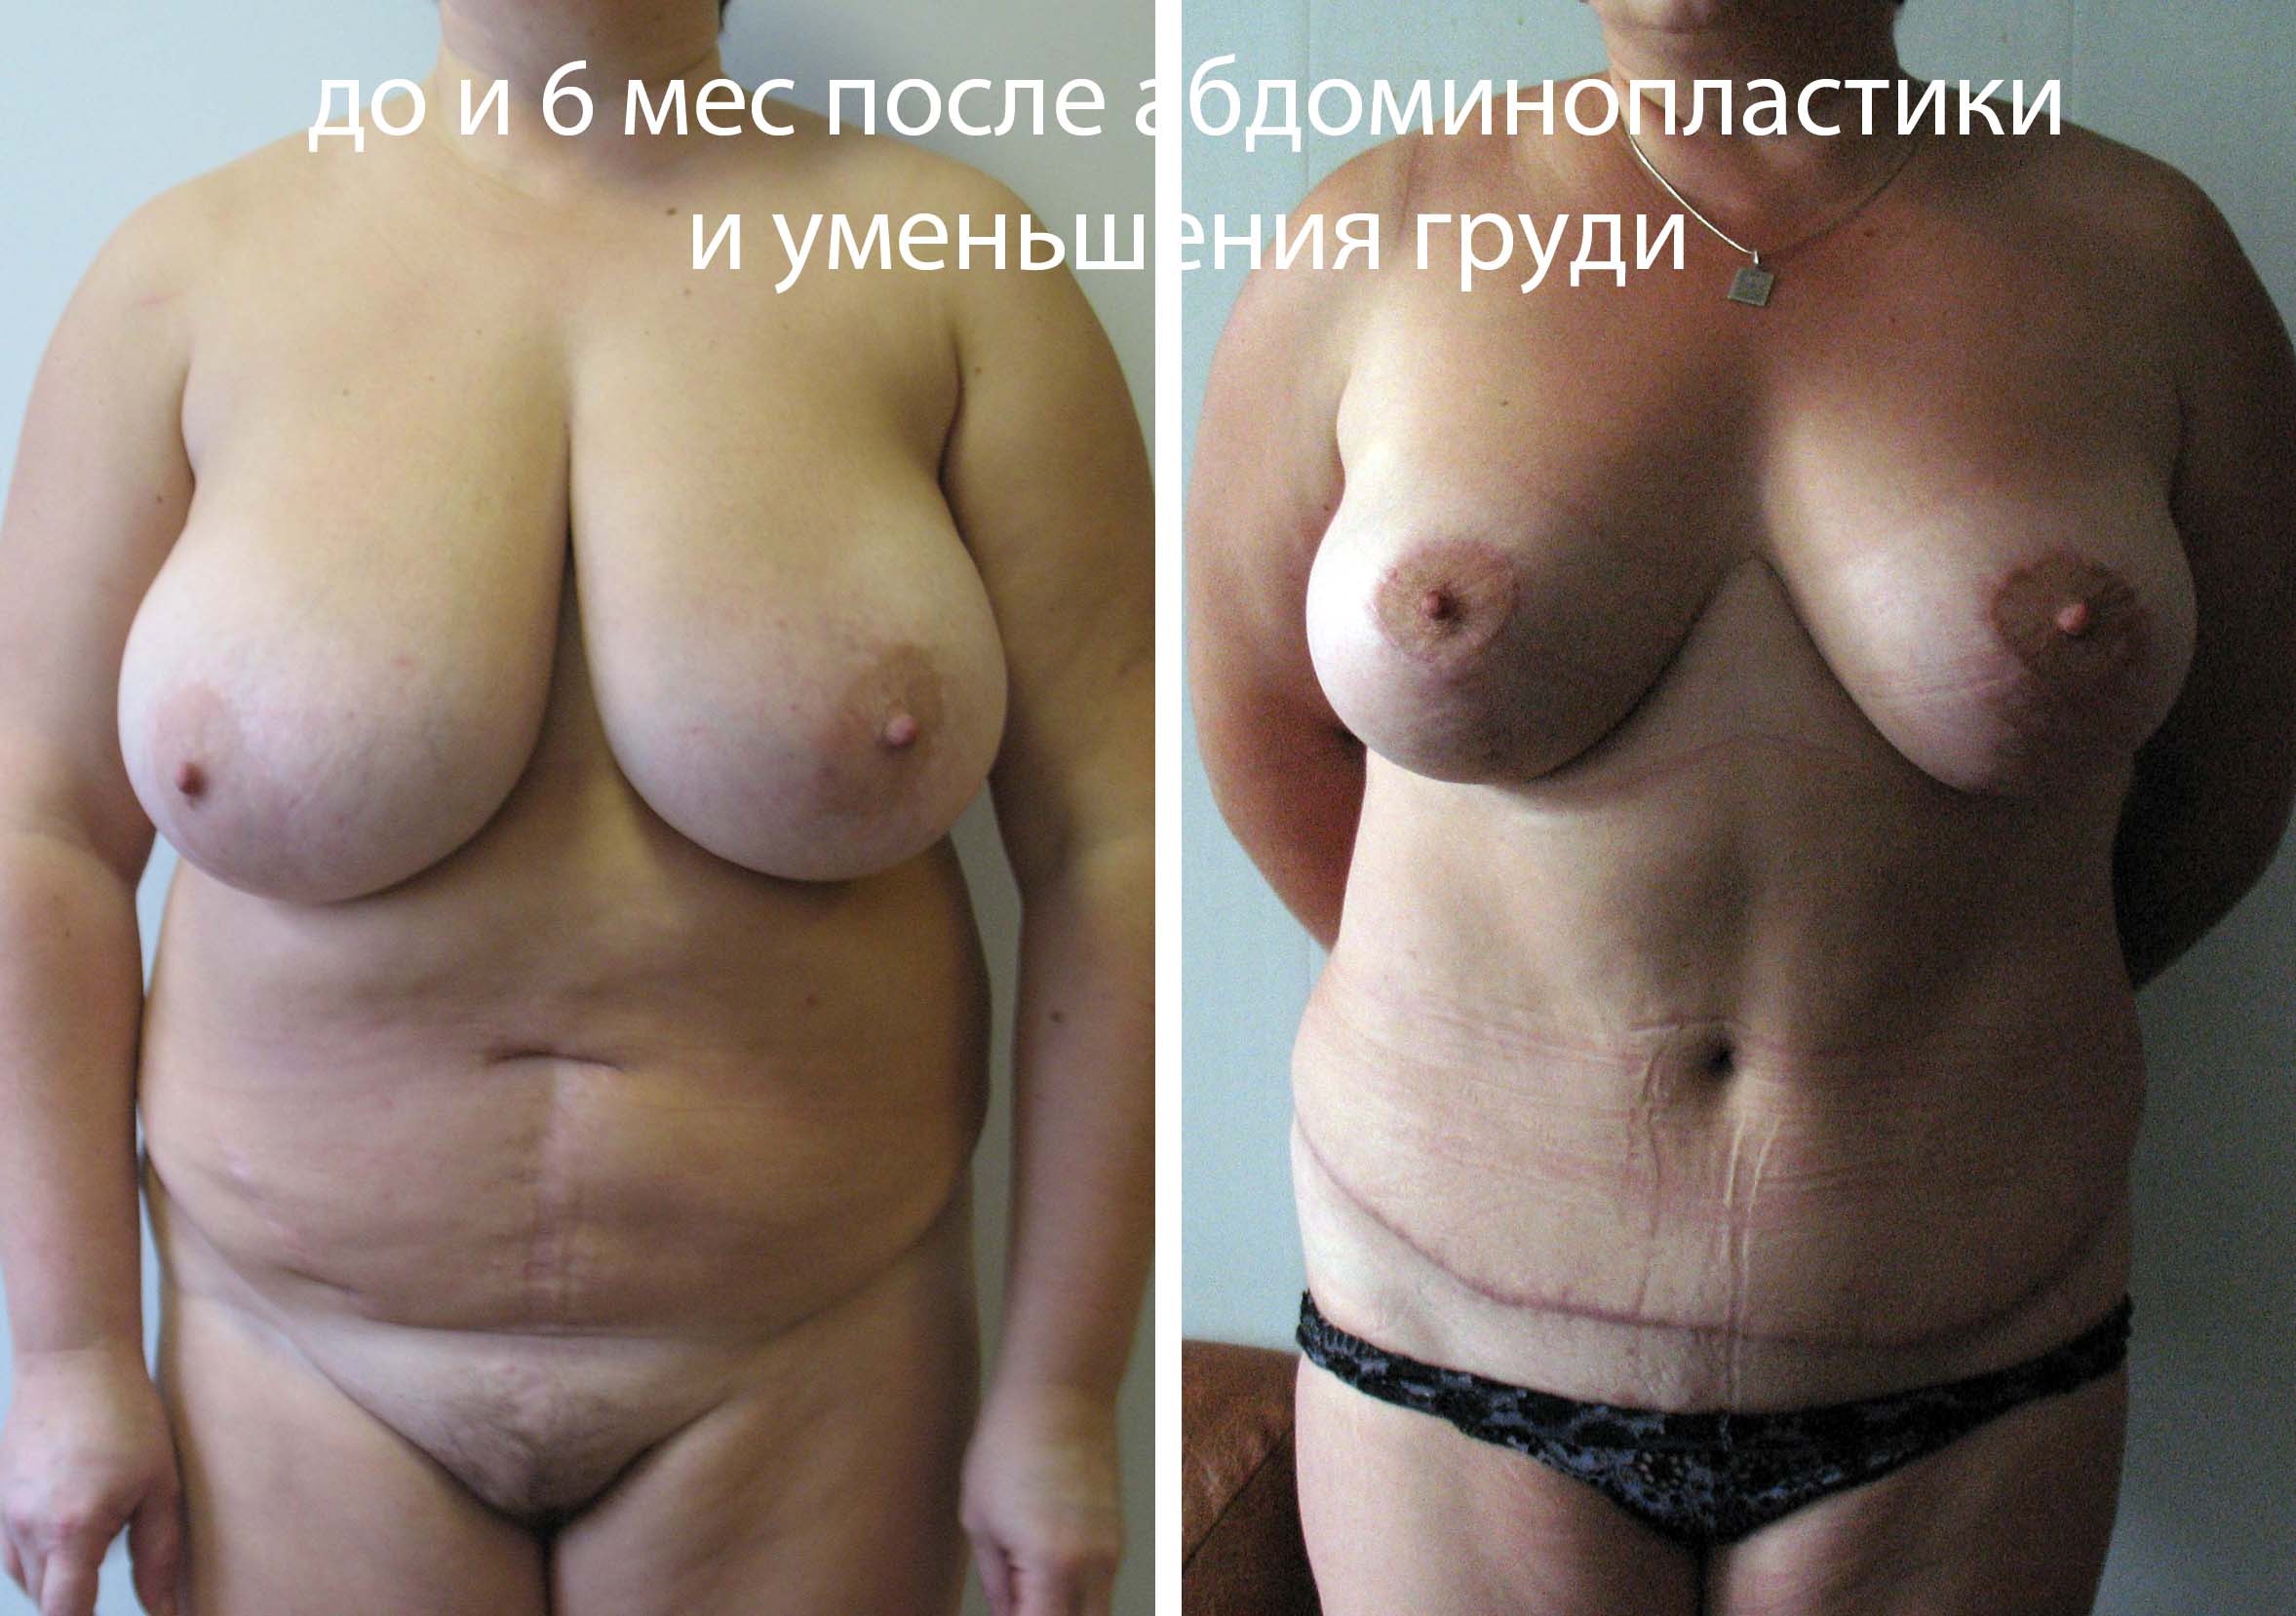 как женщин делают операцию на груди фото 71